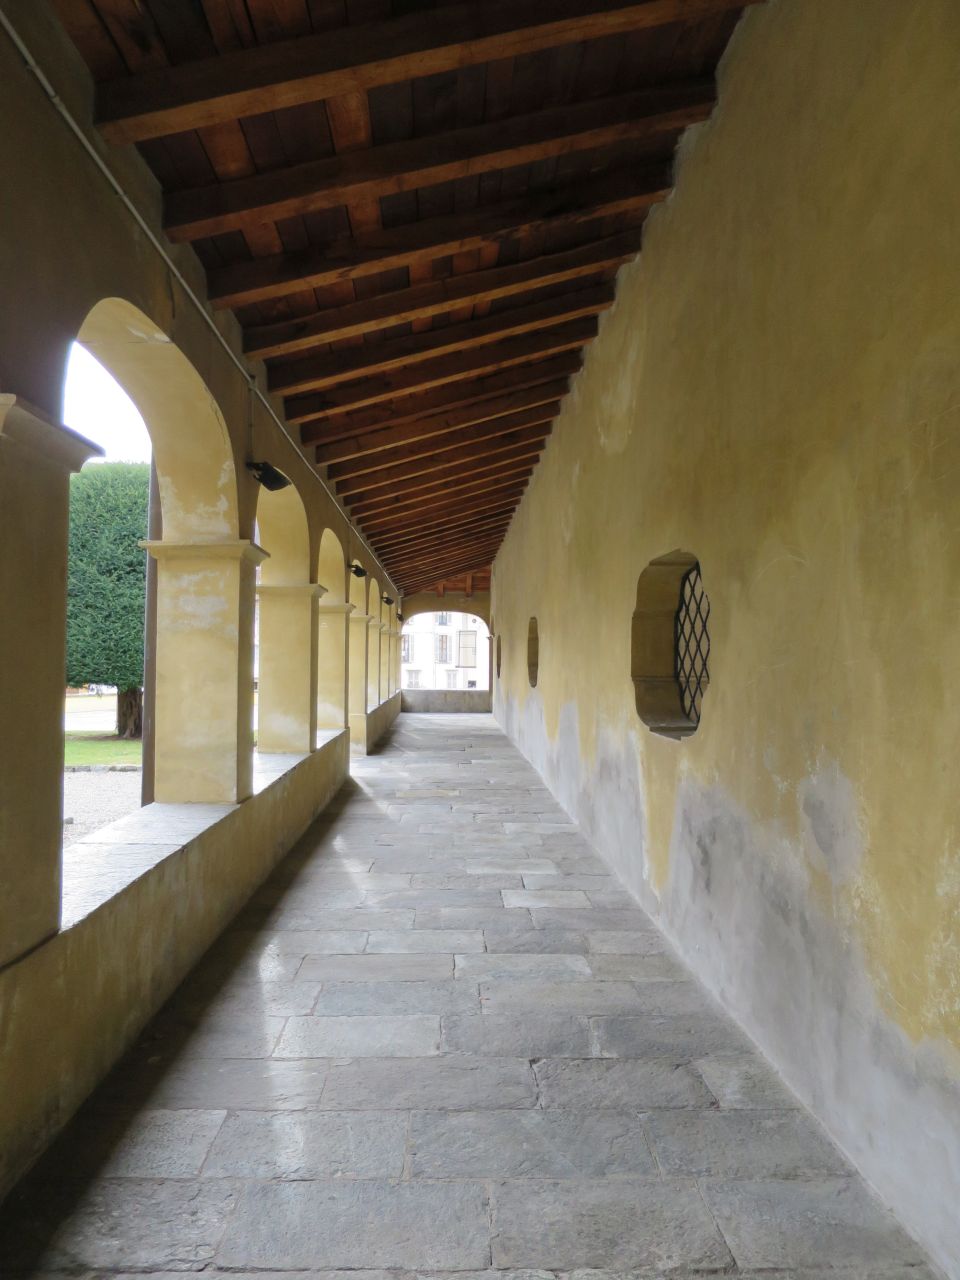 Convento di Santa Maria delle Grazie (convento) - Varallo (VC)  (XV, fine; XIX; XX; XX)